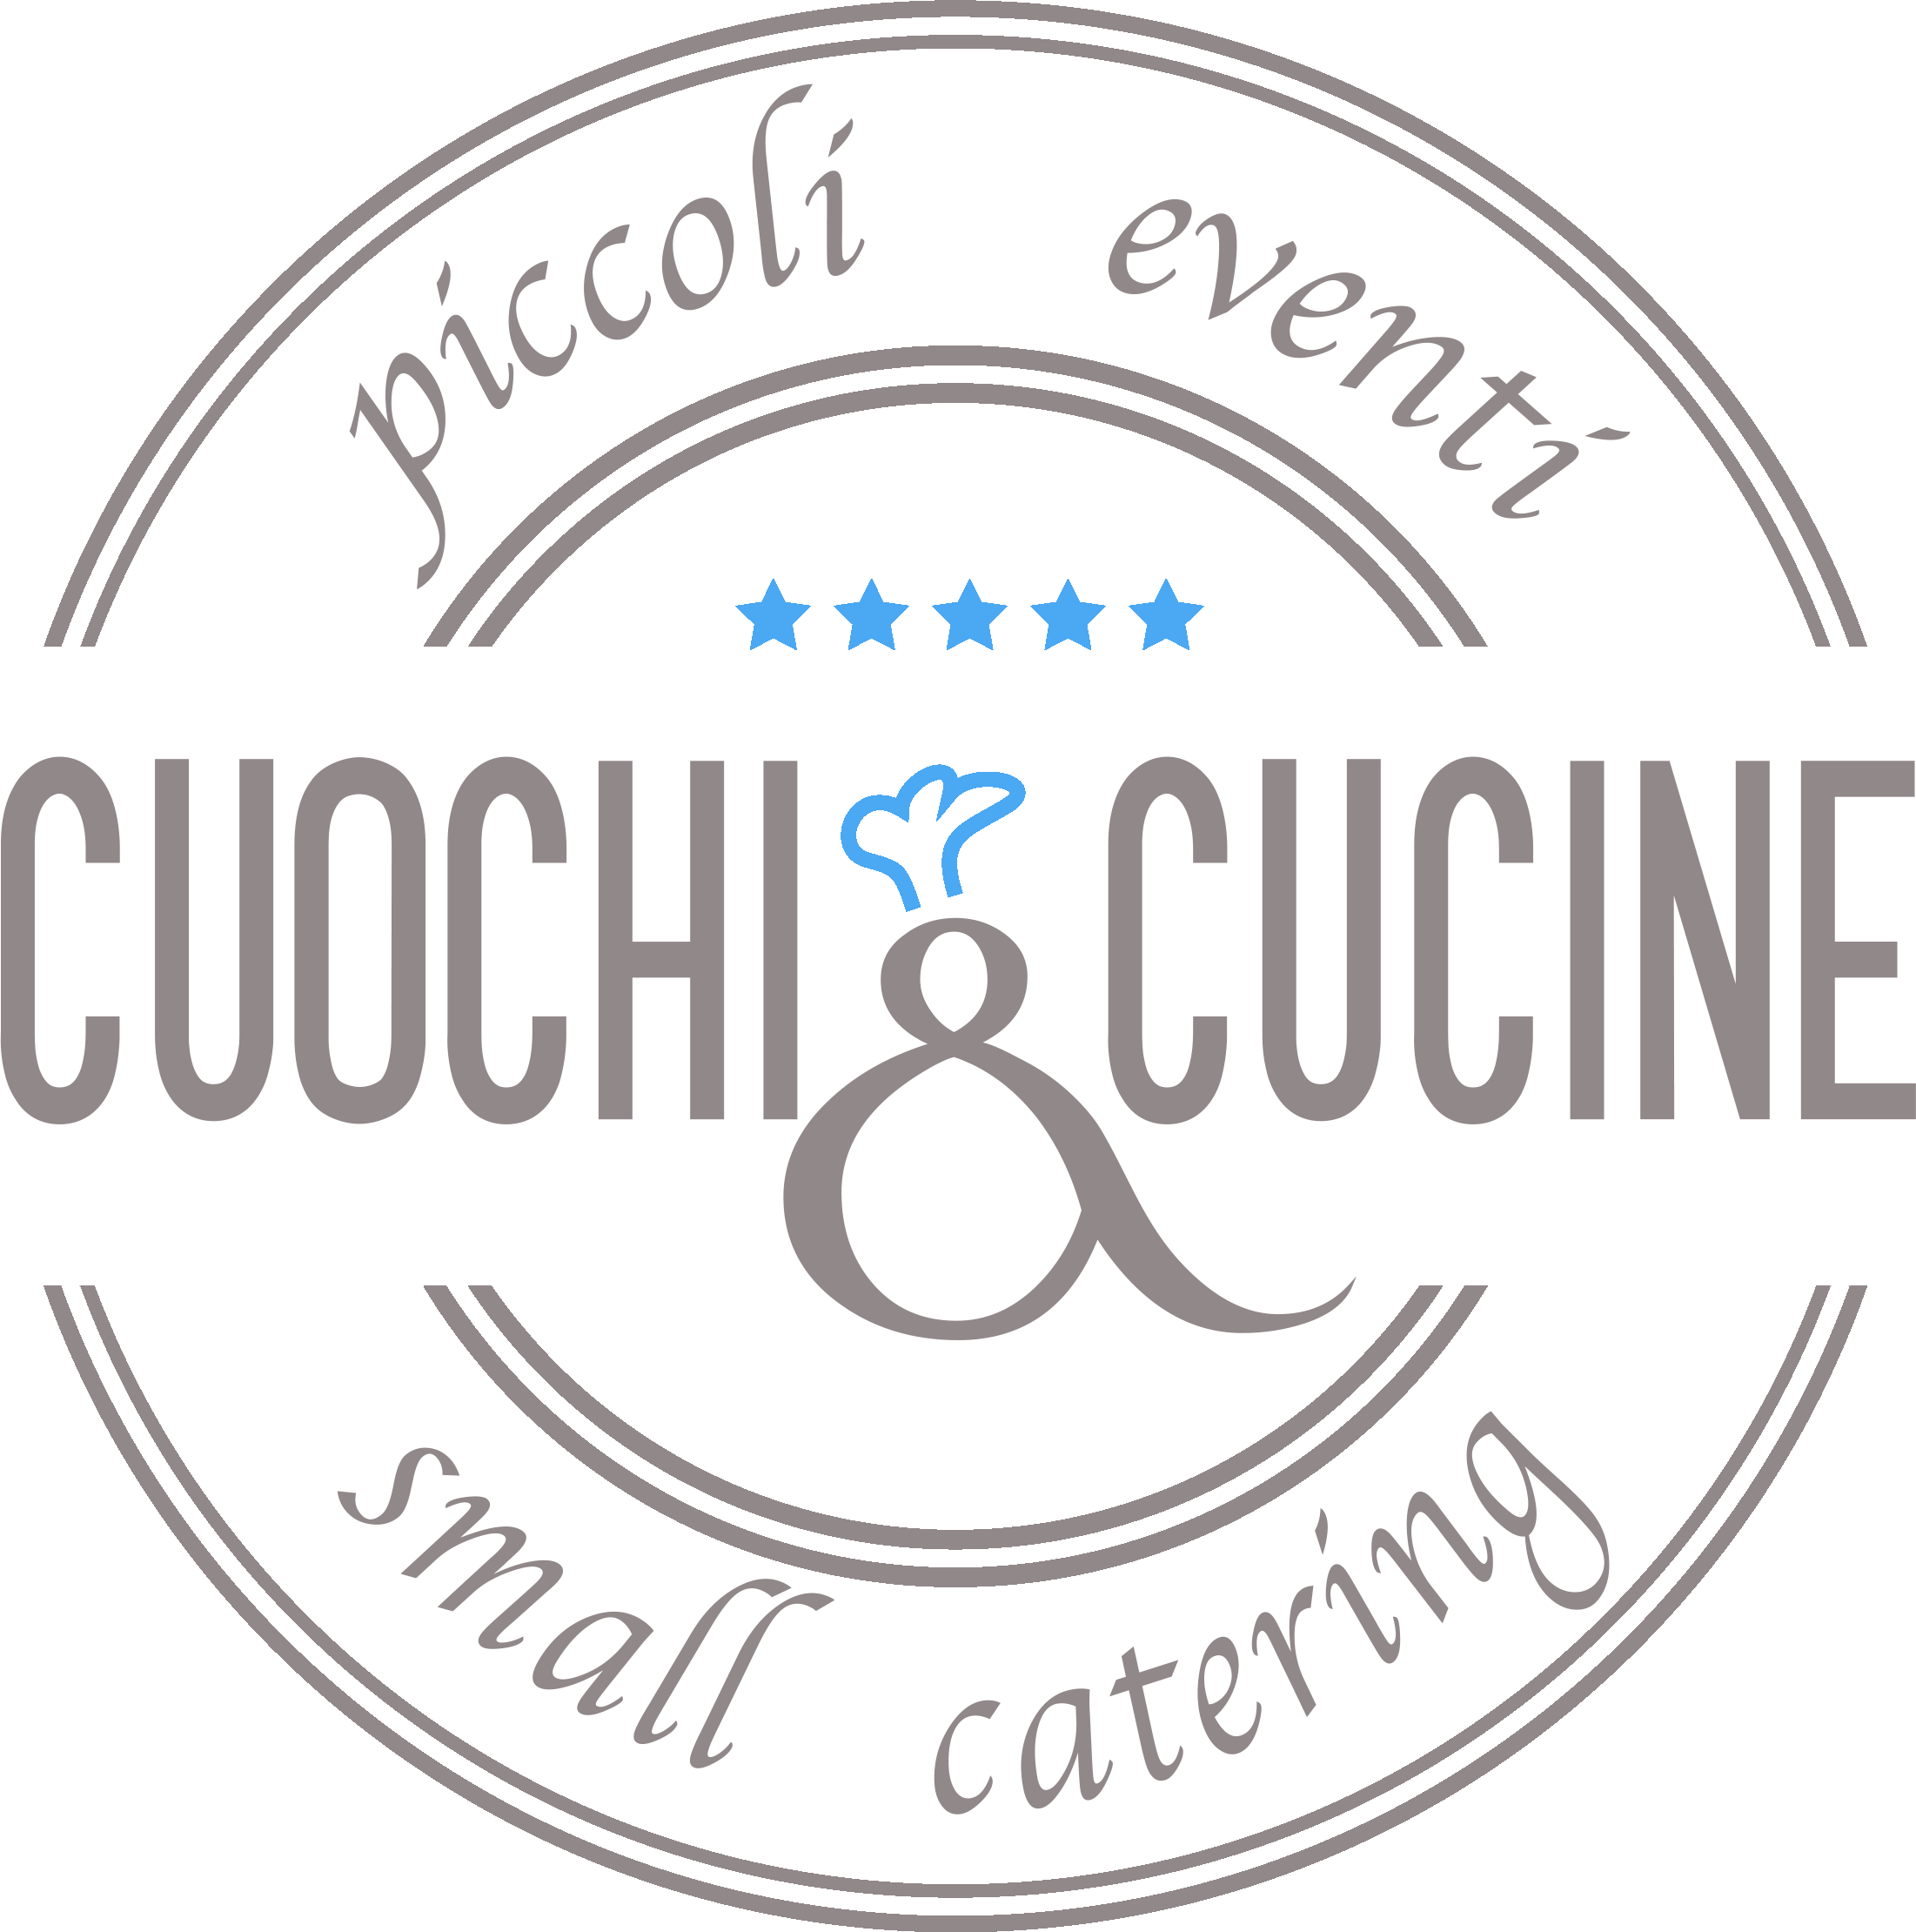 Cuochi & Cucine